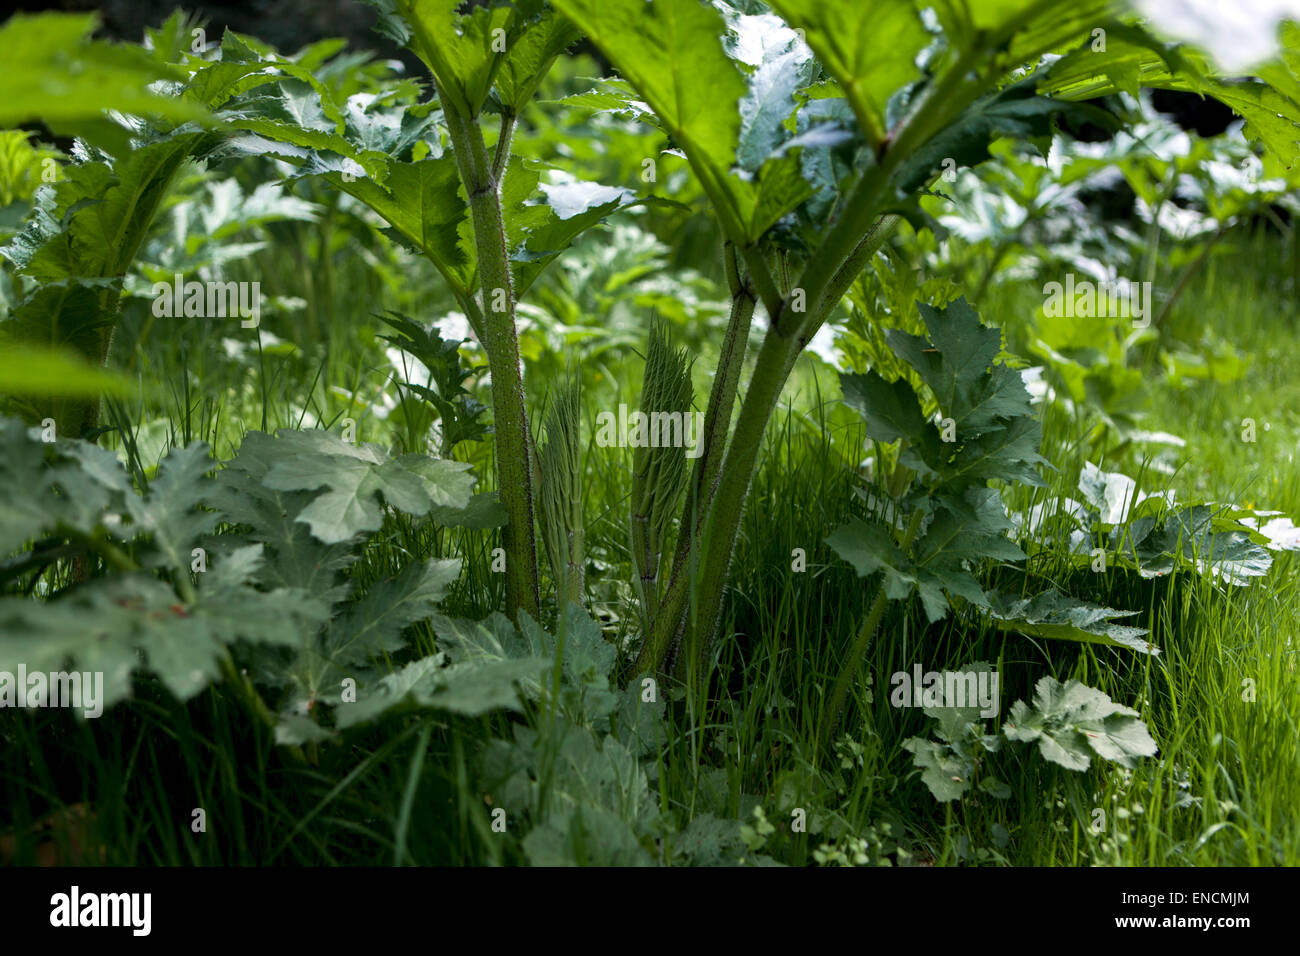 Giant hogweed Heracleum mantegazzianum Stock Photo